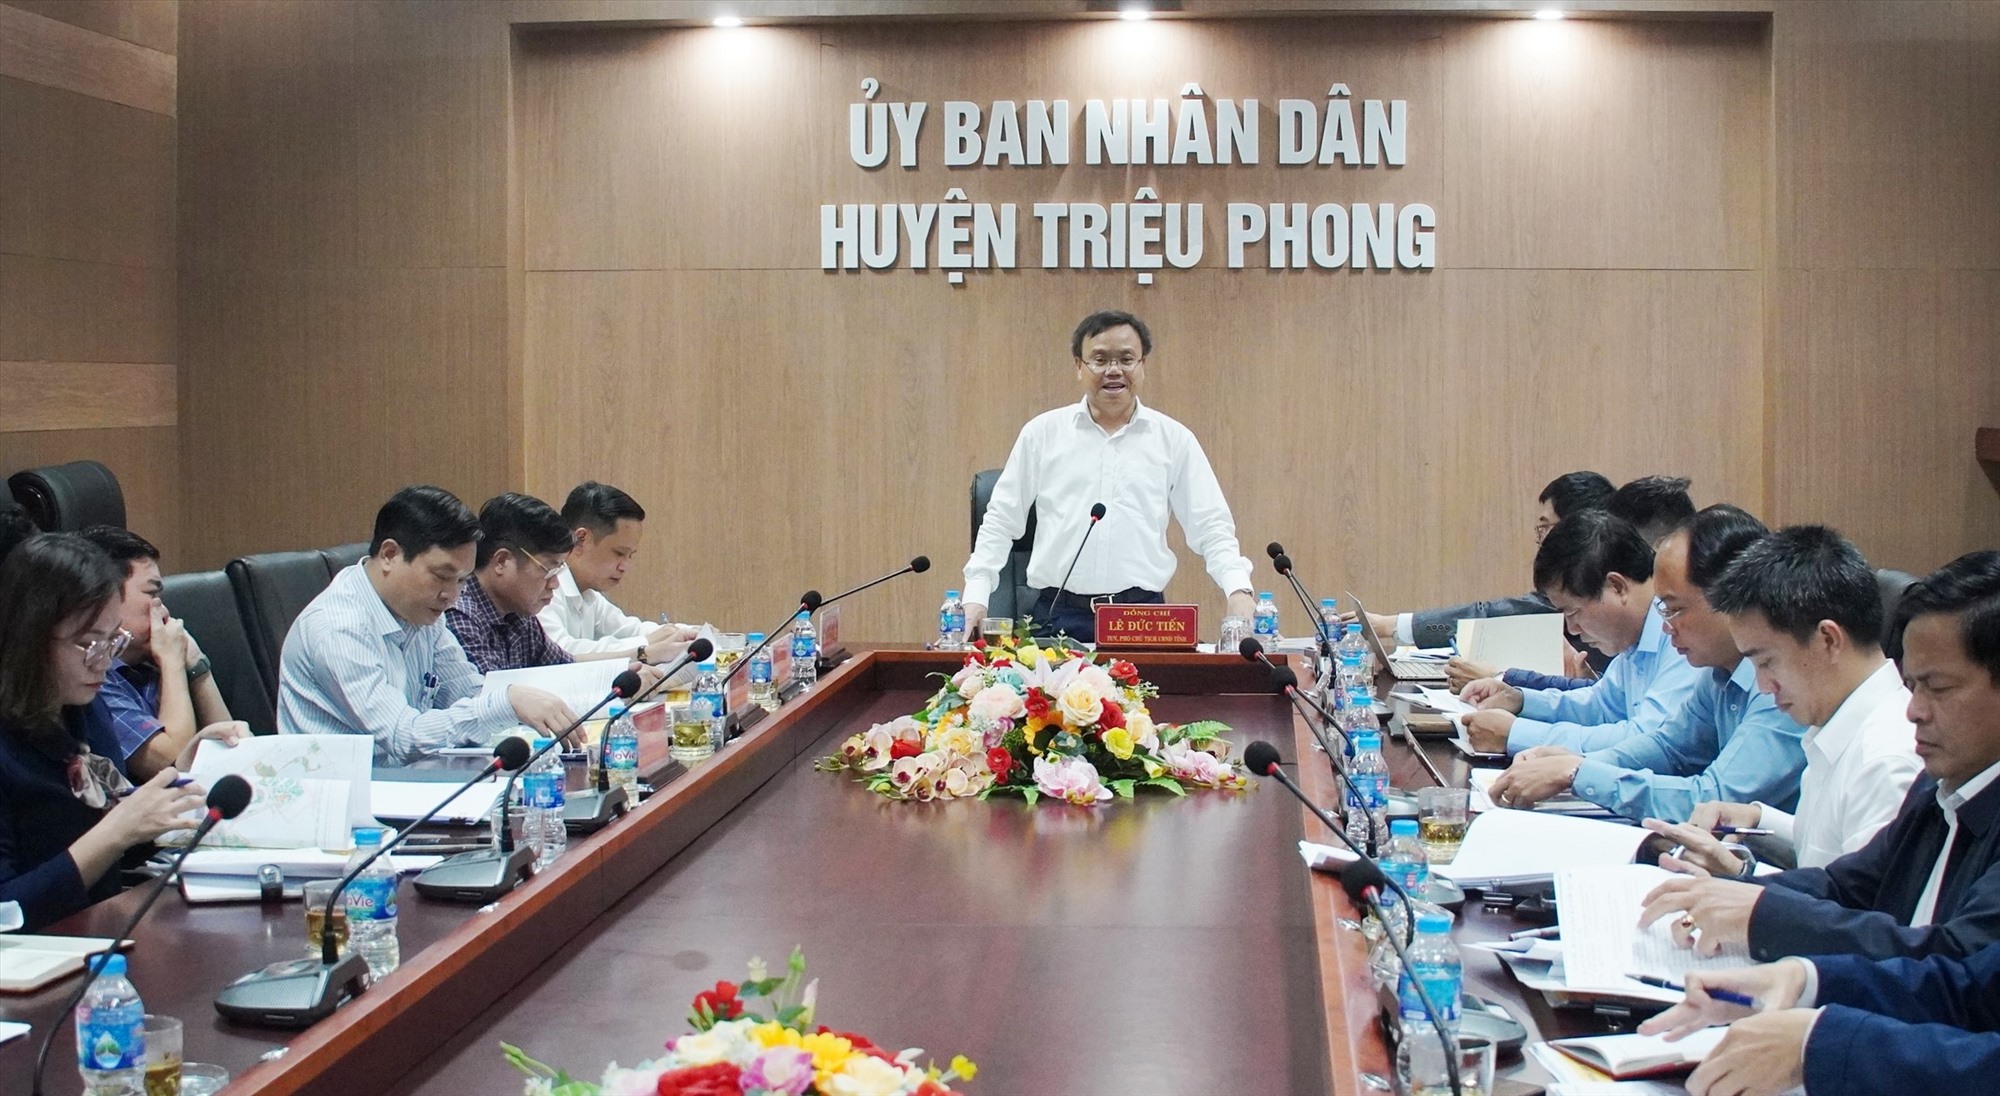 Phó Chủ tịch UBND tỉnh Lê Đức Tiến phát biểu kết luận cuộc họp - Ảnh: T.N